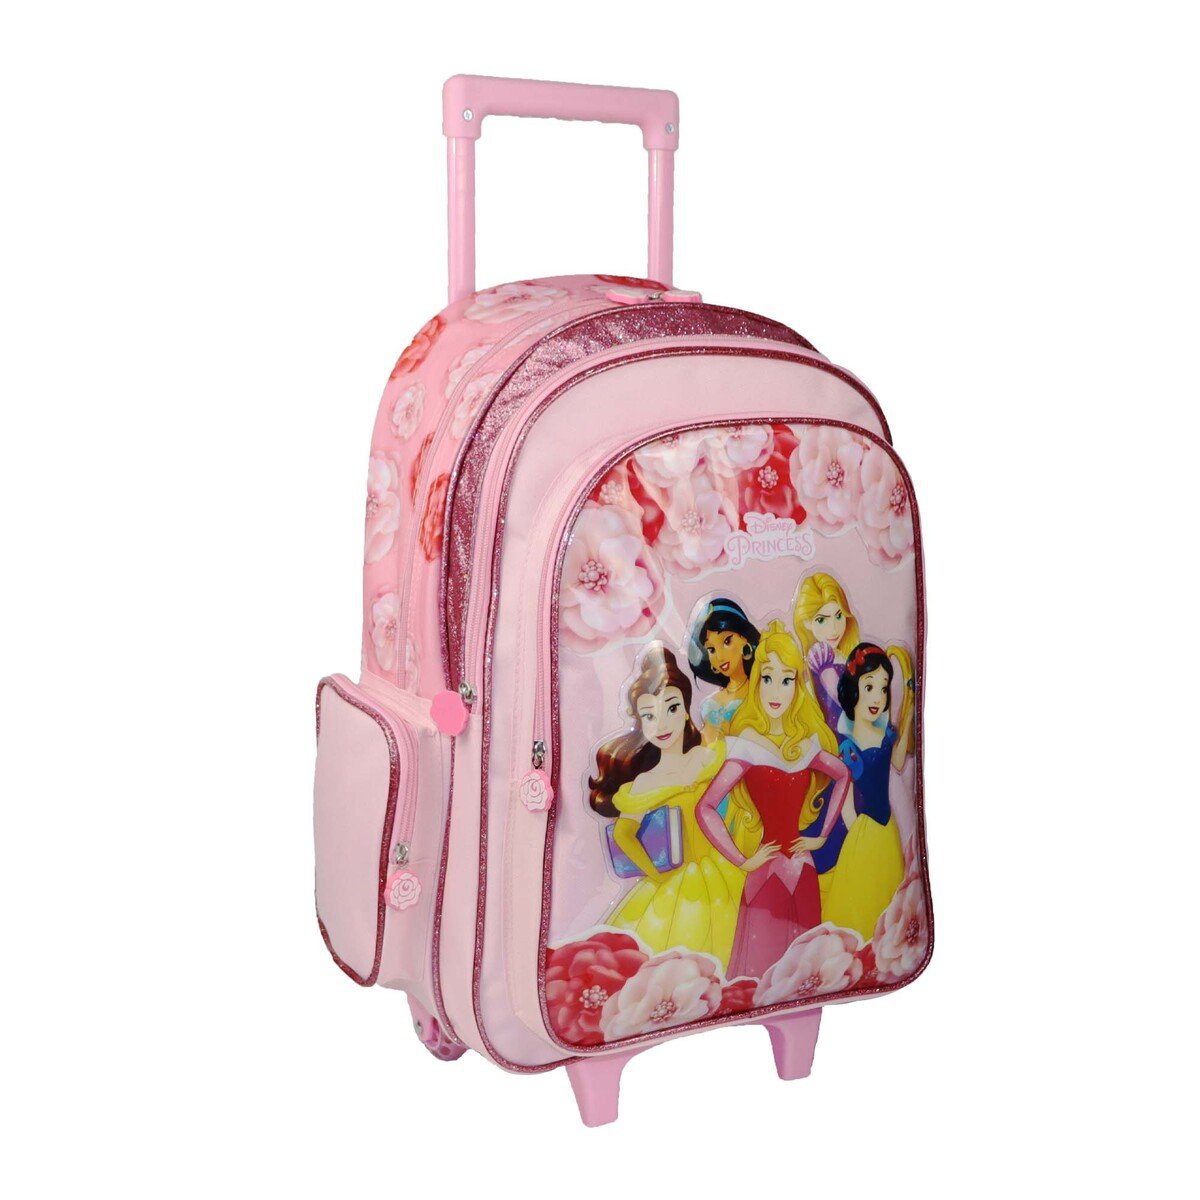 Princess School Trolley Bag 6899200230 18inch